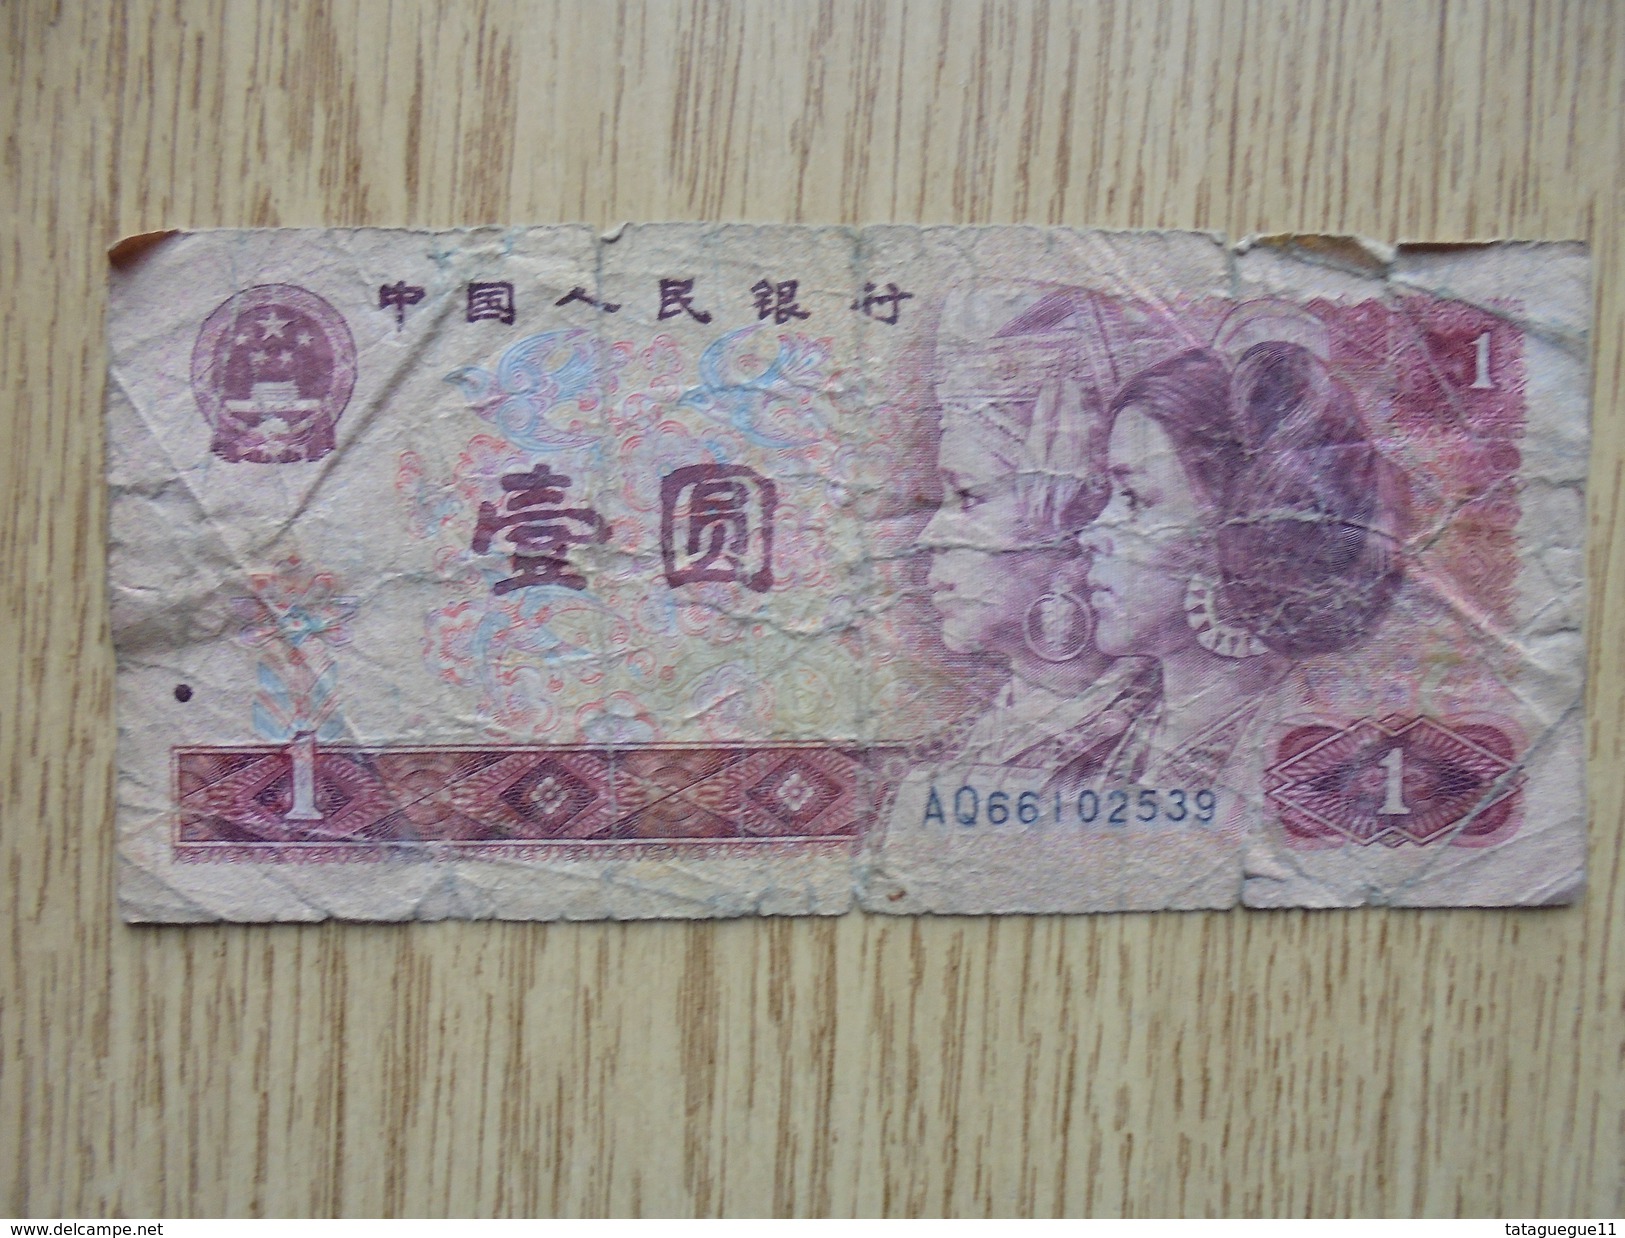 Ancien - Billet De Banque - ZHONGGUO RENMIN YINHANG 1 YI YUAN - 1980 - Other - Asia